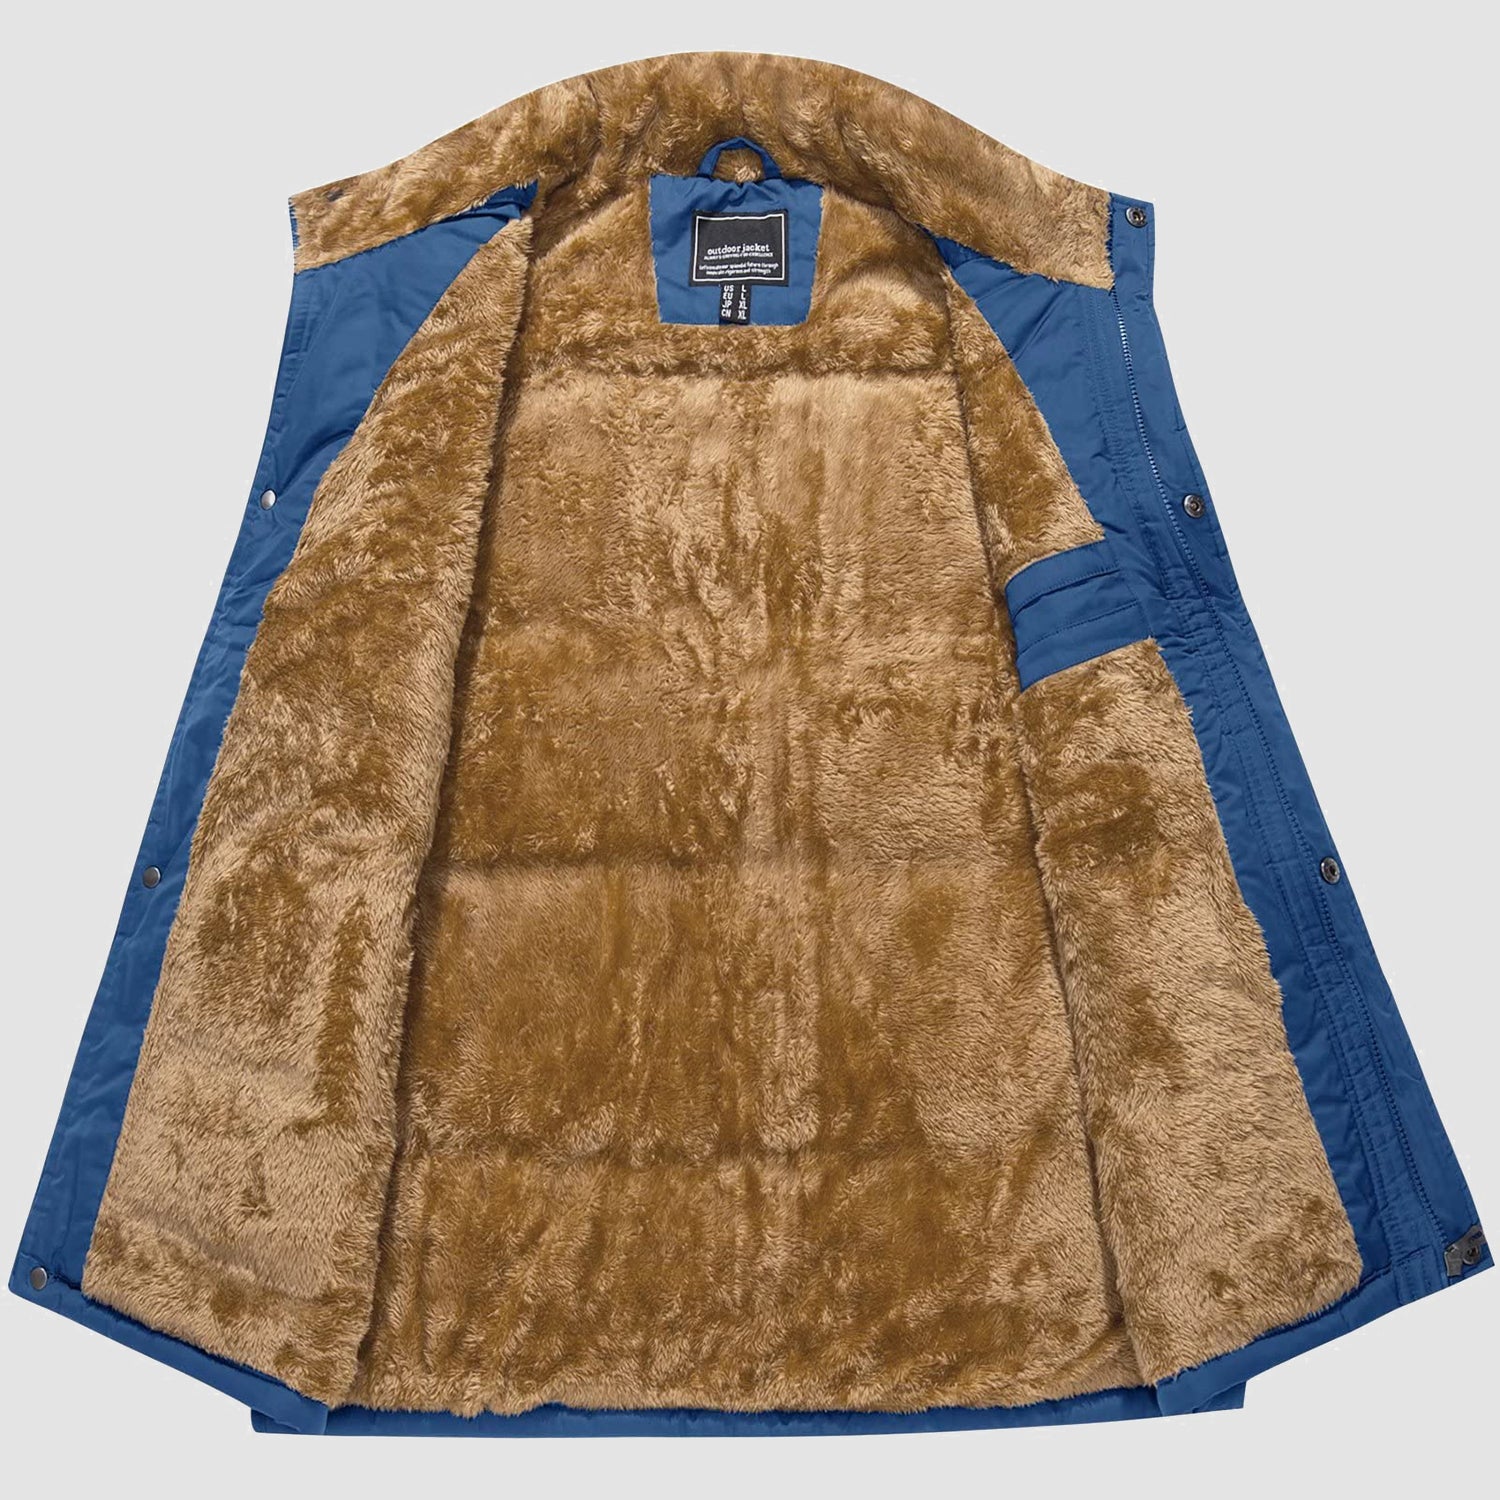 Men's Outerwear Vests Full-Zip Sleeveless Jacket Winter Warm Fleece Lined Vests Stand Collar